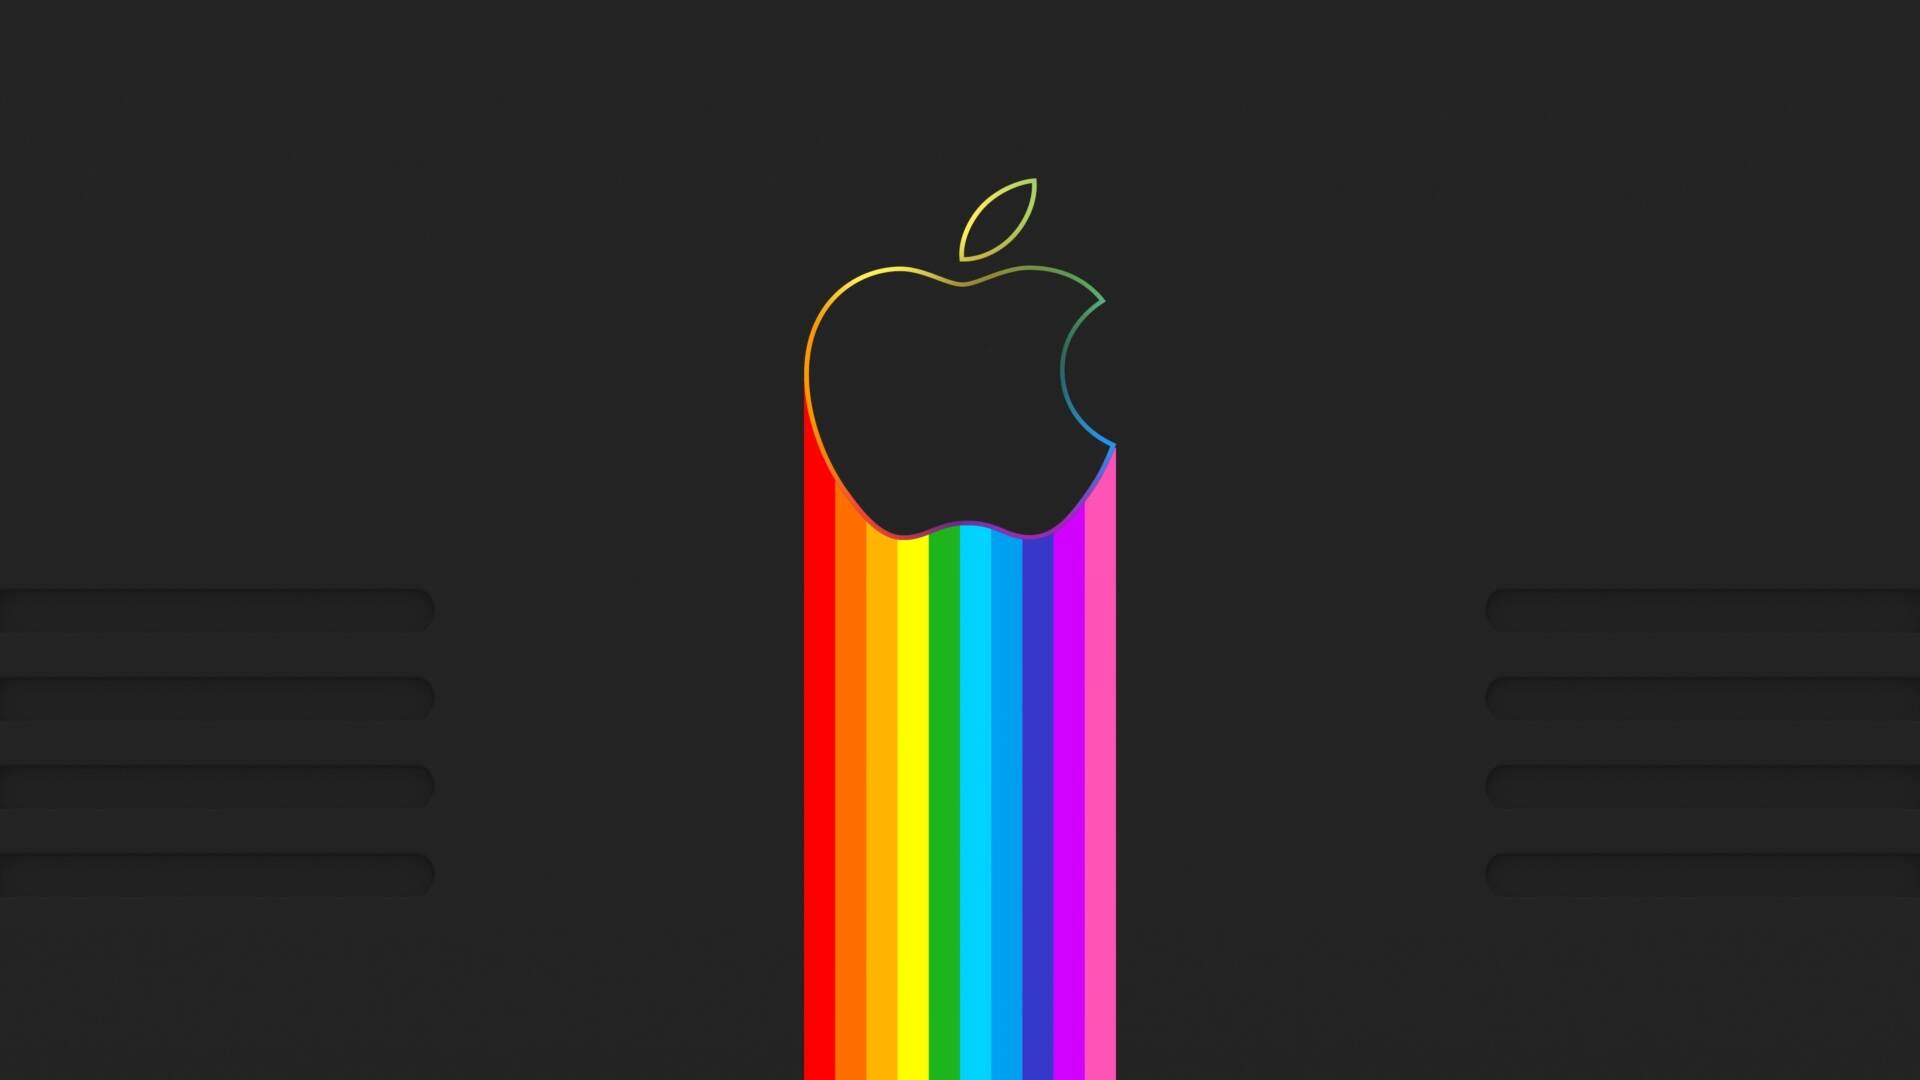 苹果图标app壁纸图片